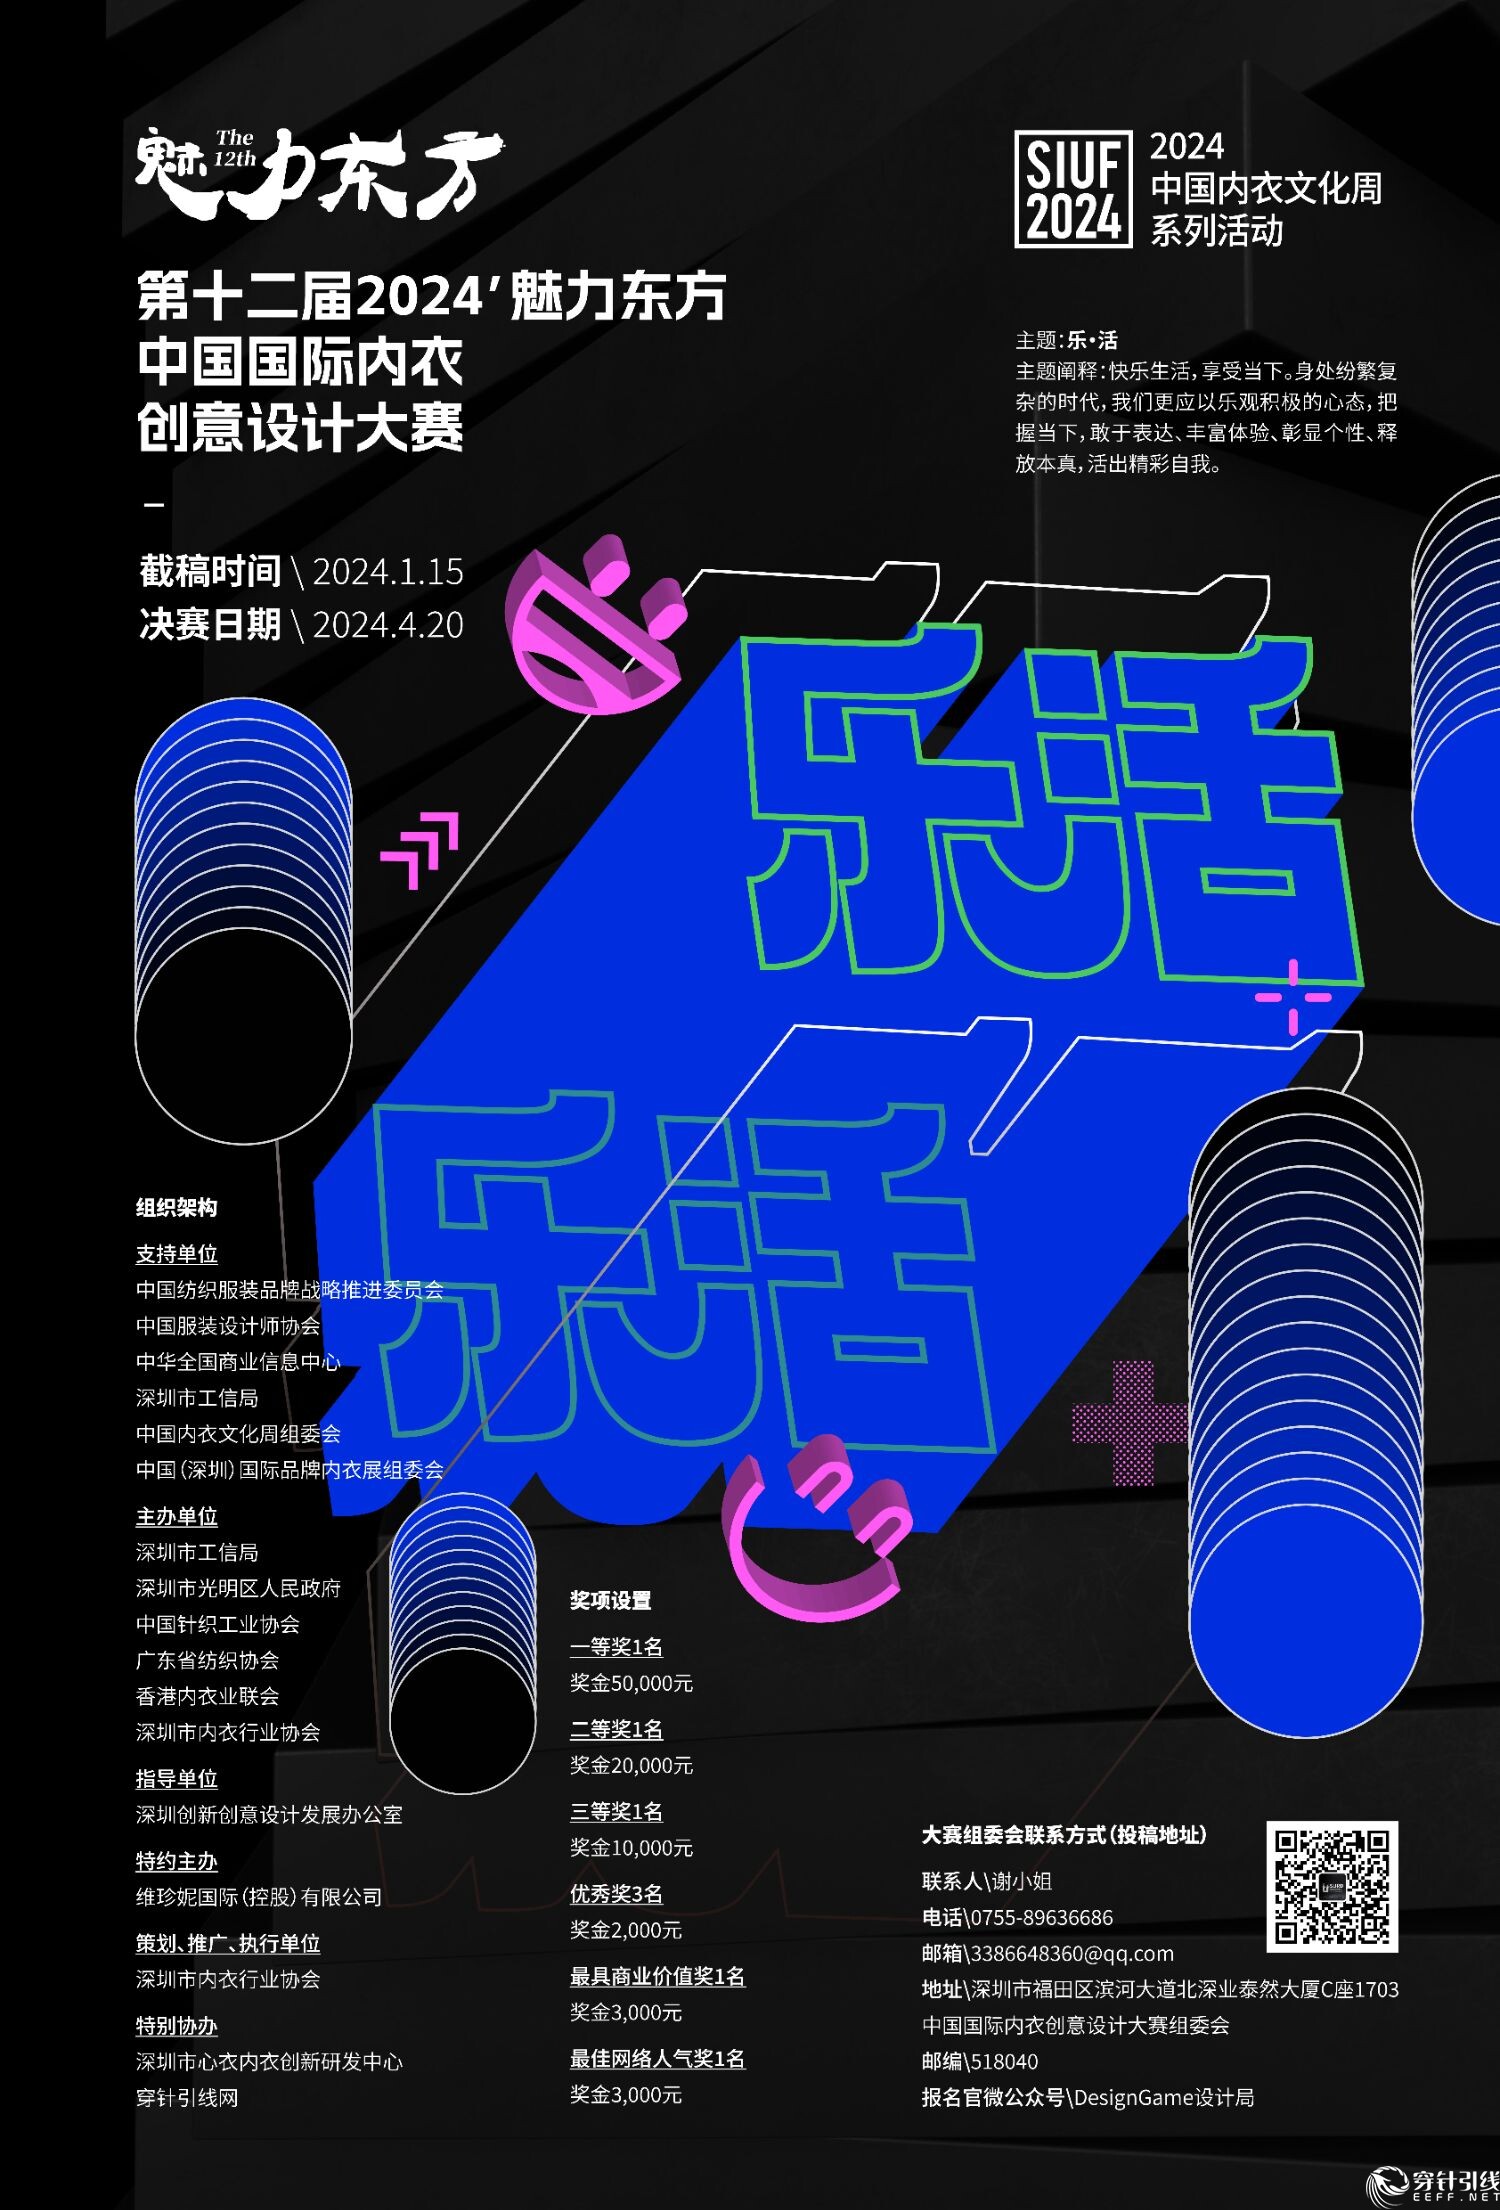 2024’魅力东方中国国际内衣创意设计大赛-CNYISAI艺赛